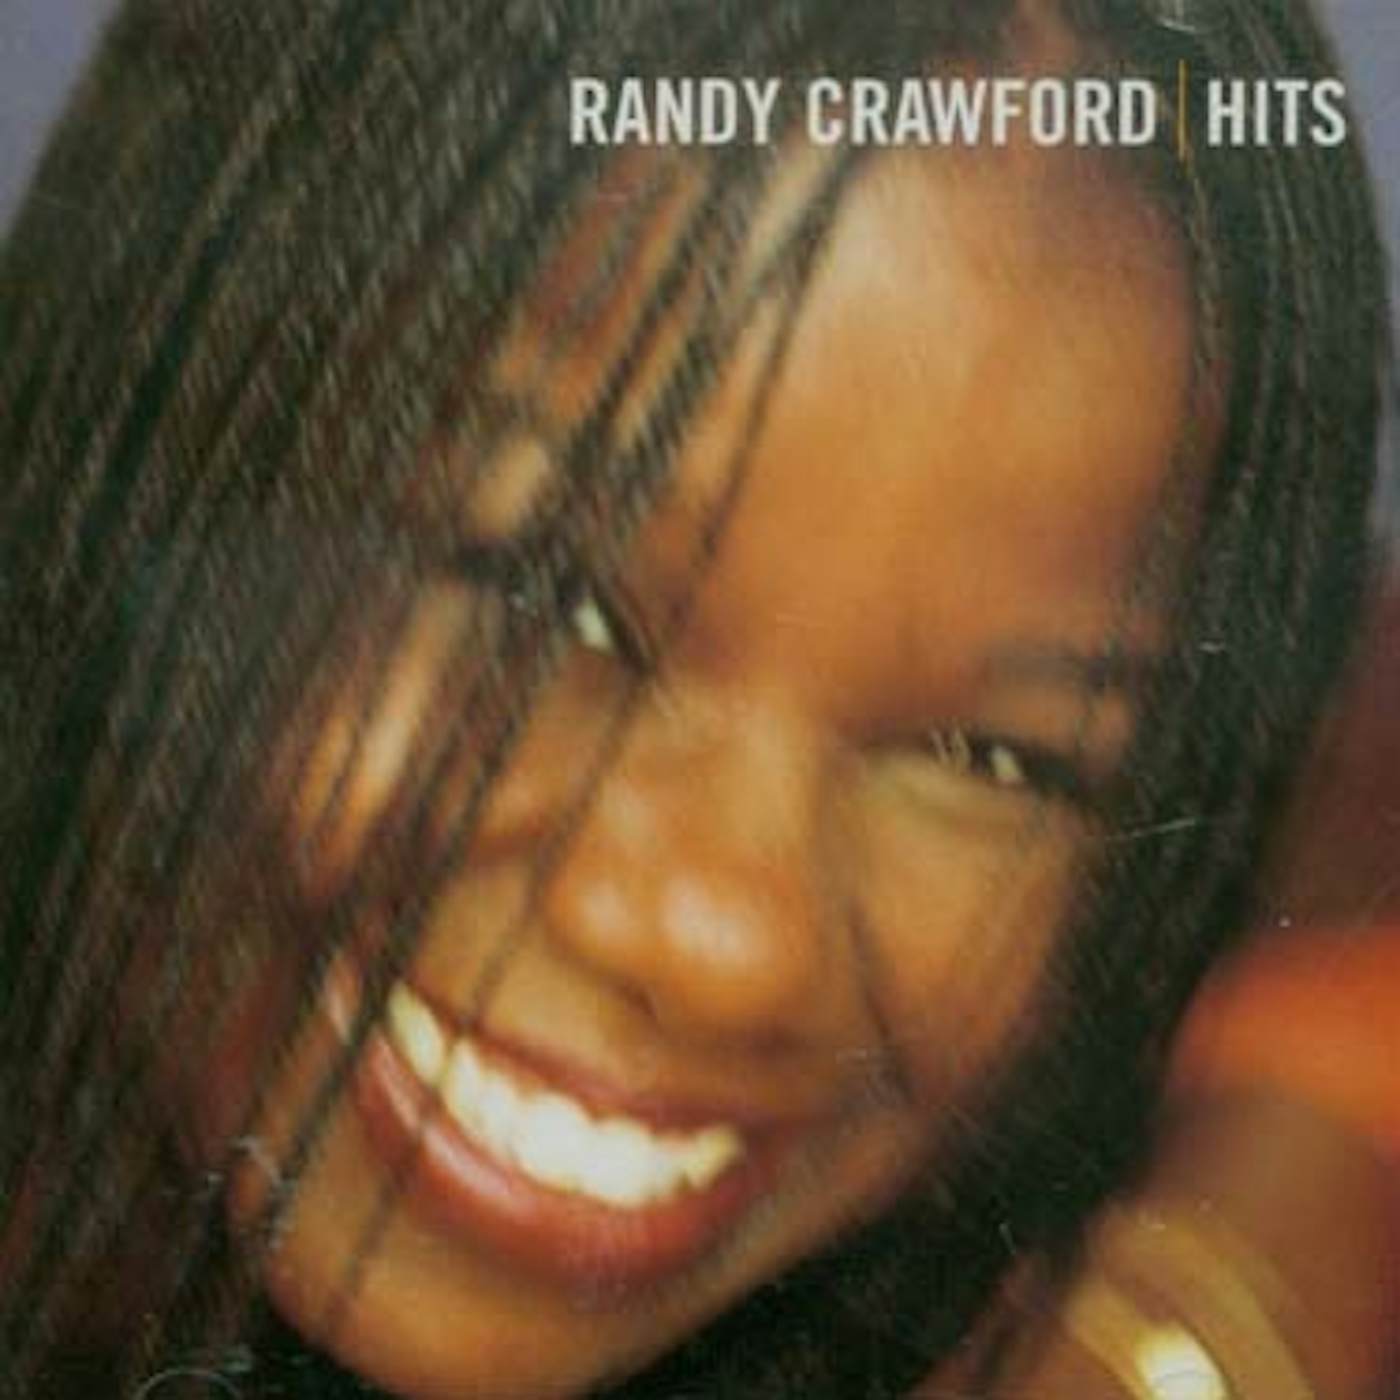 Randy Crawford HITS CD